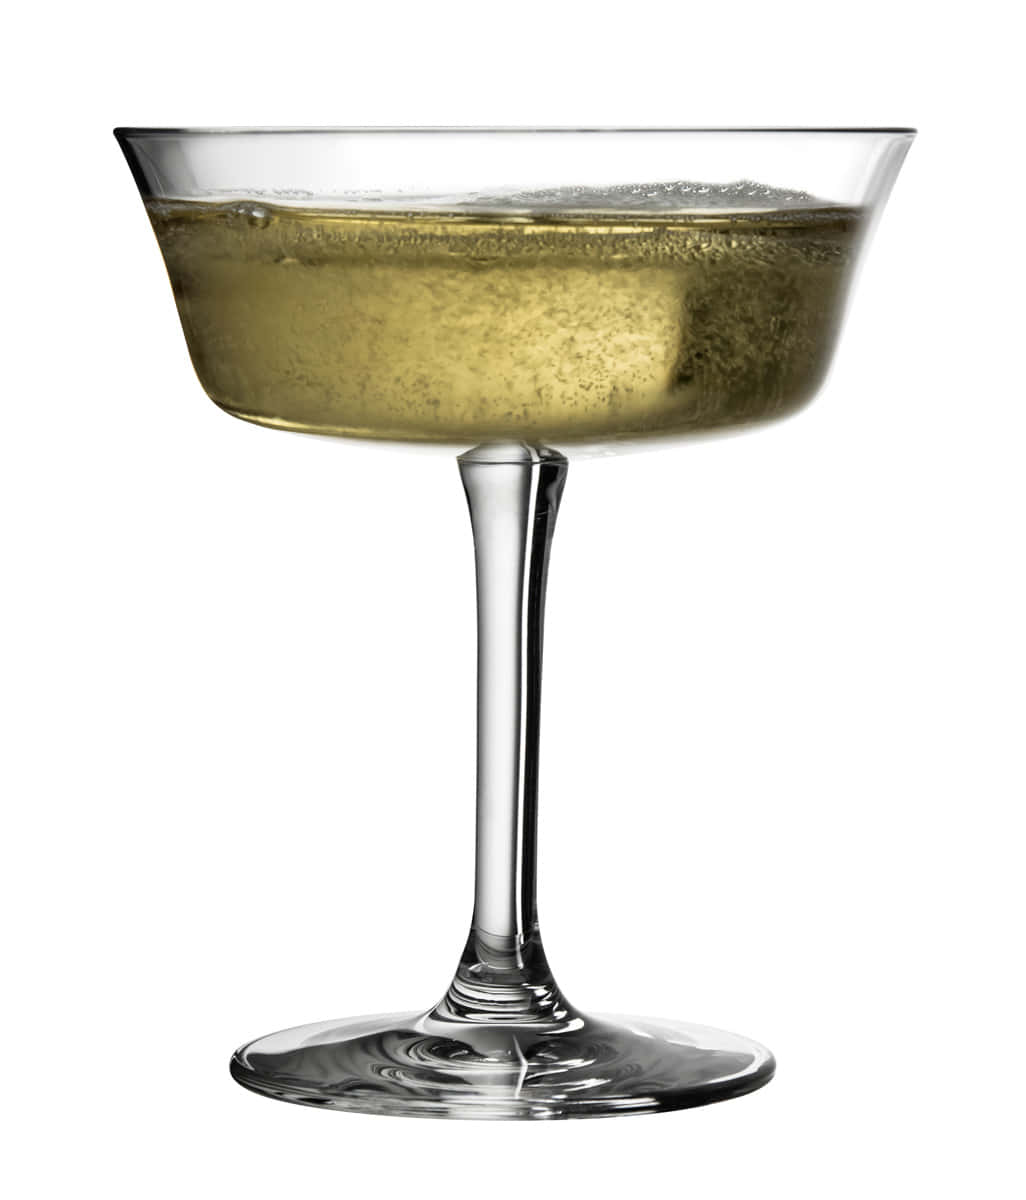 Breites Cocktailglas Retro Fizzio mit Champagner gefüllt